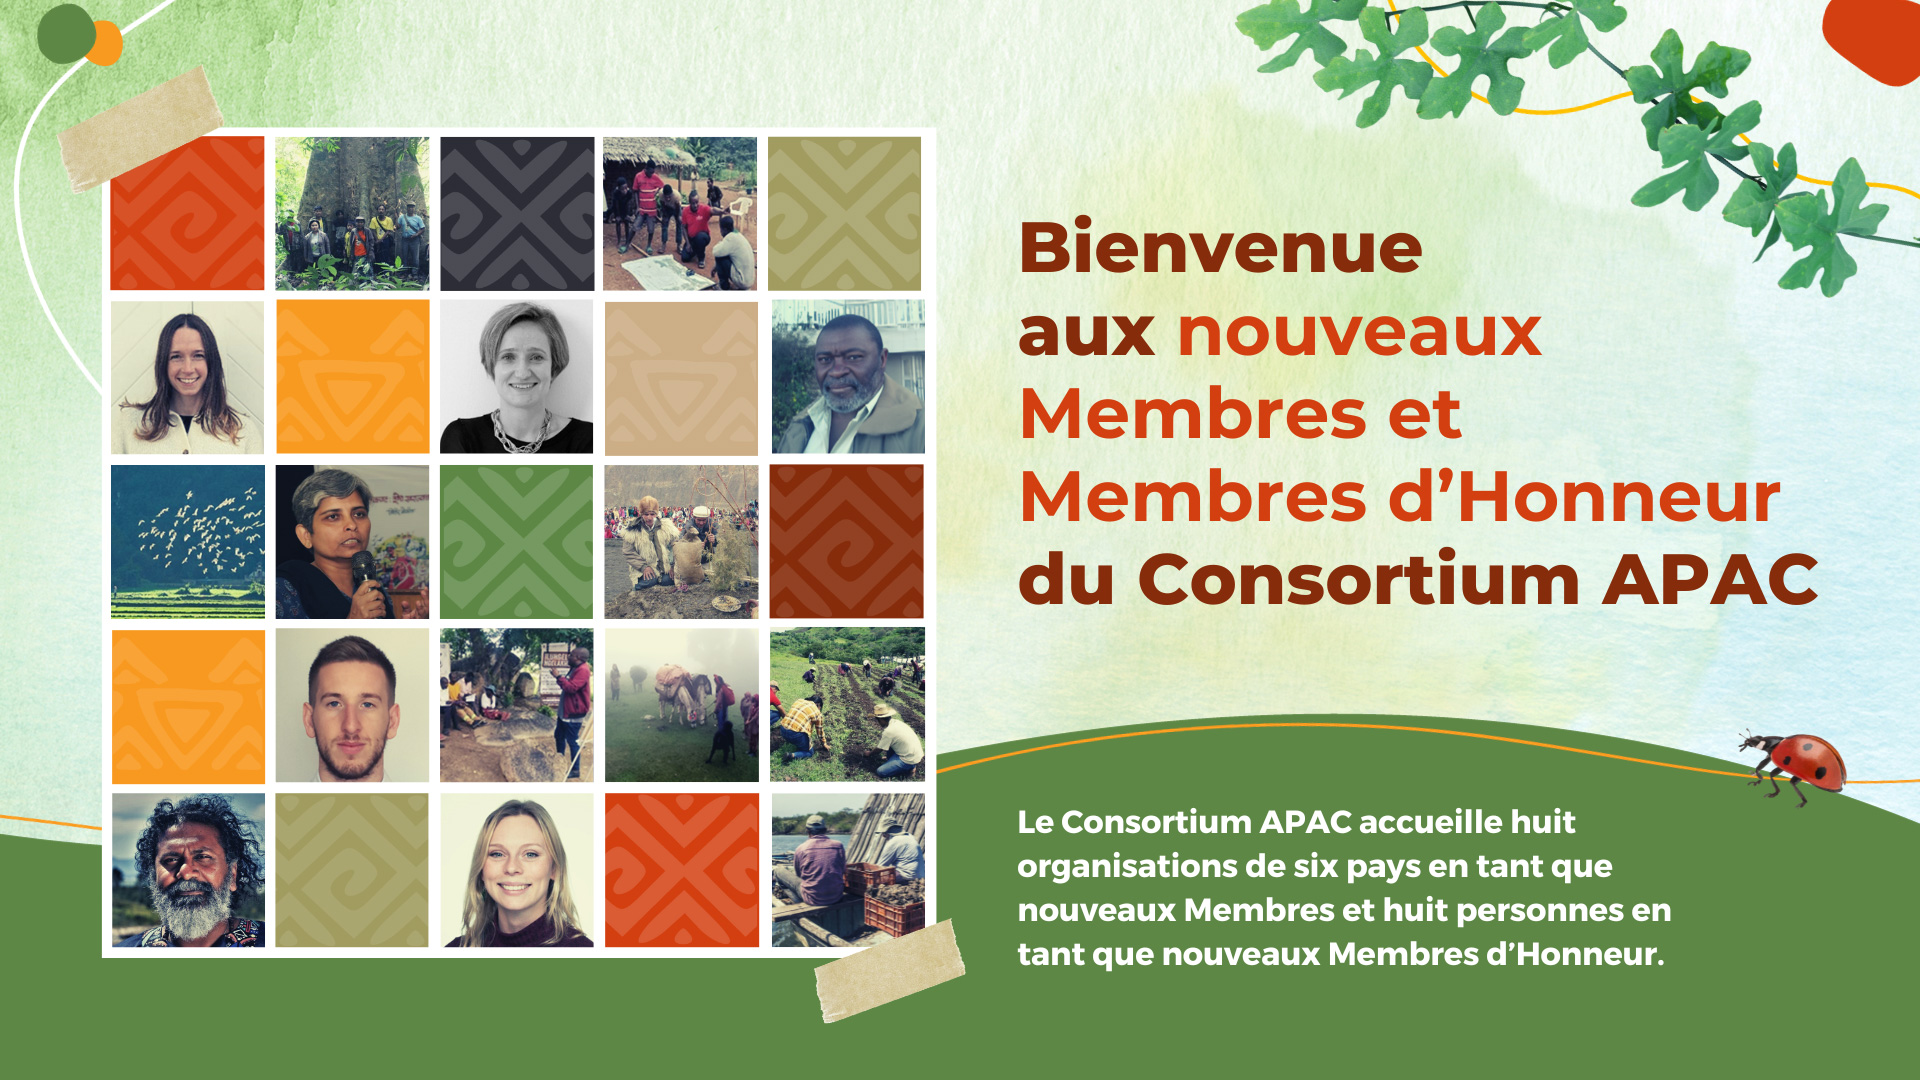 Bienvenue aux nouveaux Membres et Membres d’Honneur du Consortium APAC 